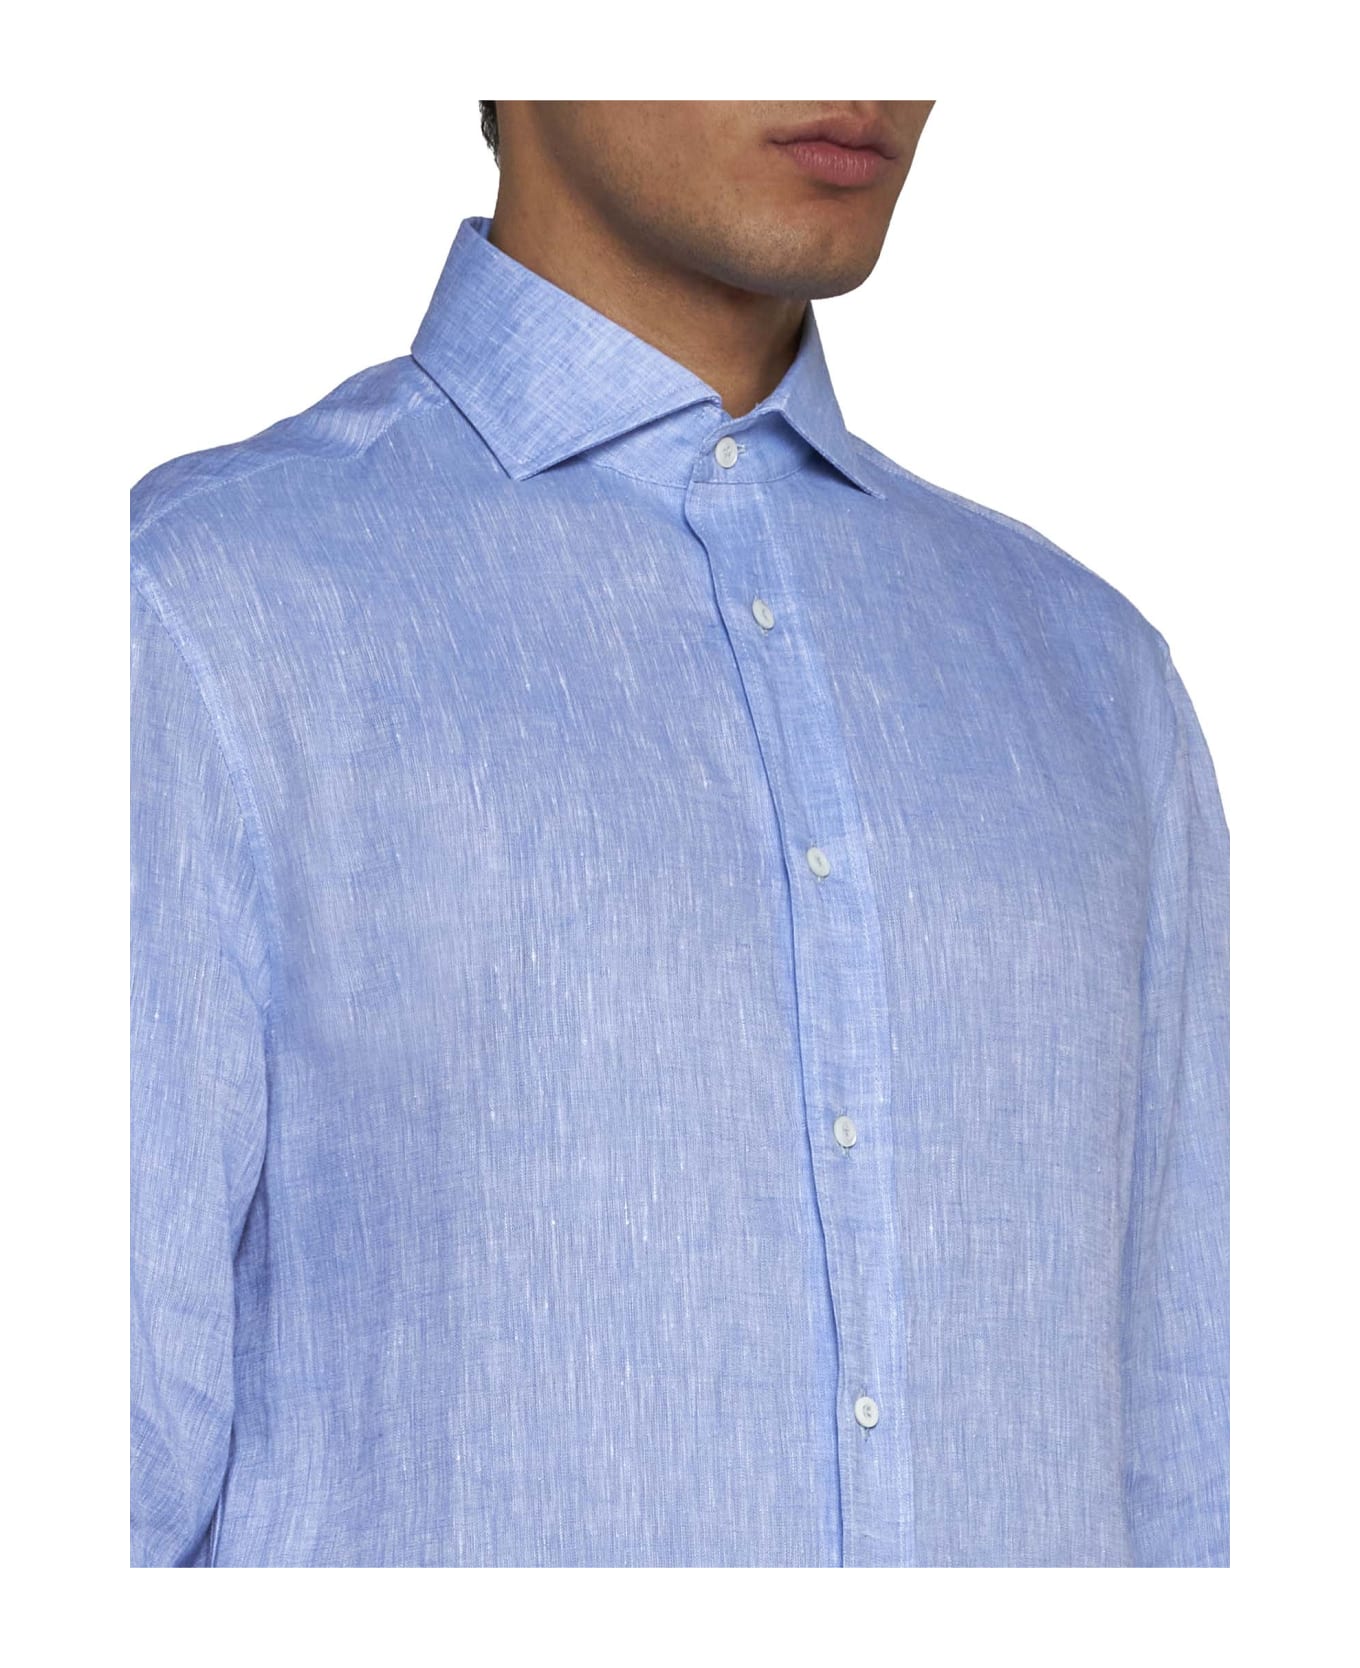 Brunello Cucinelli Shirt - Azzurro シャツ